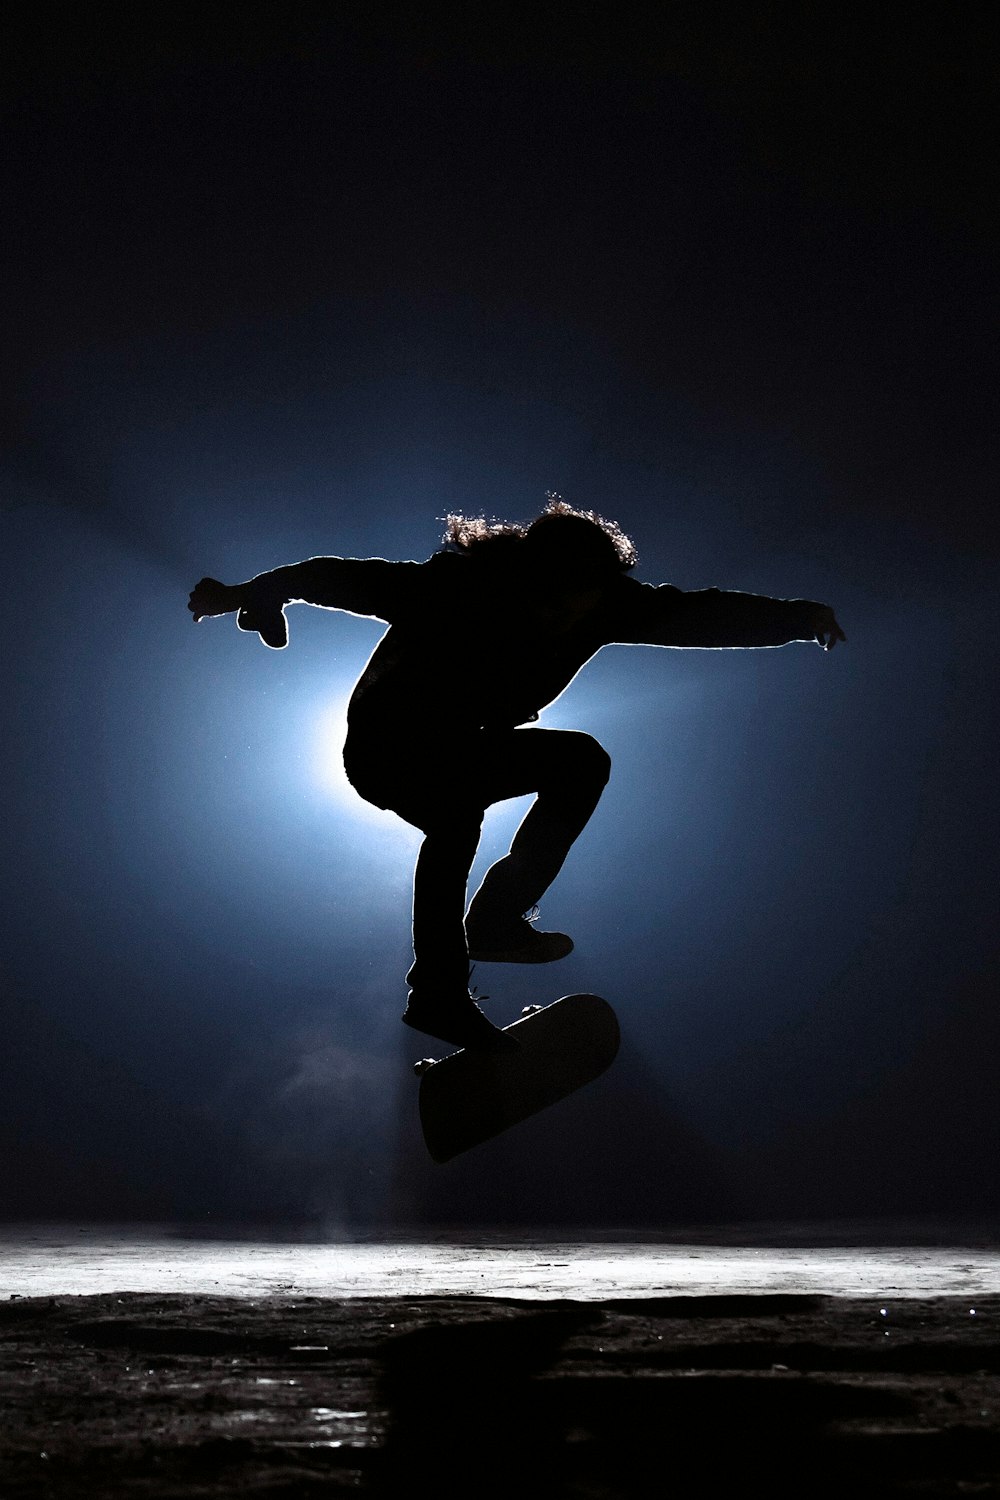 스케이트보드를 타는 남자의 사진